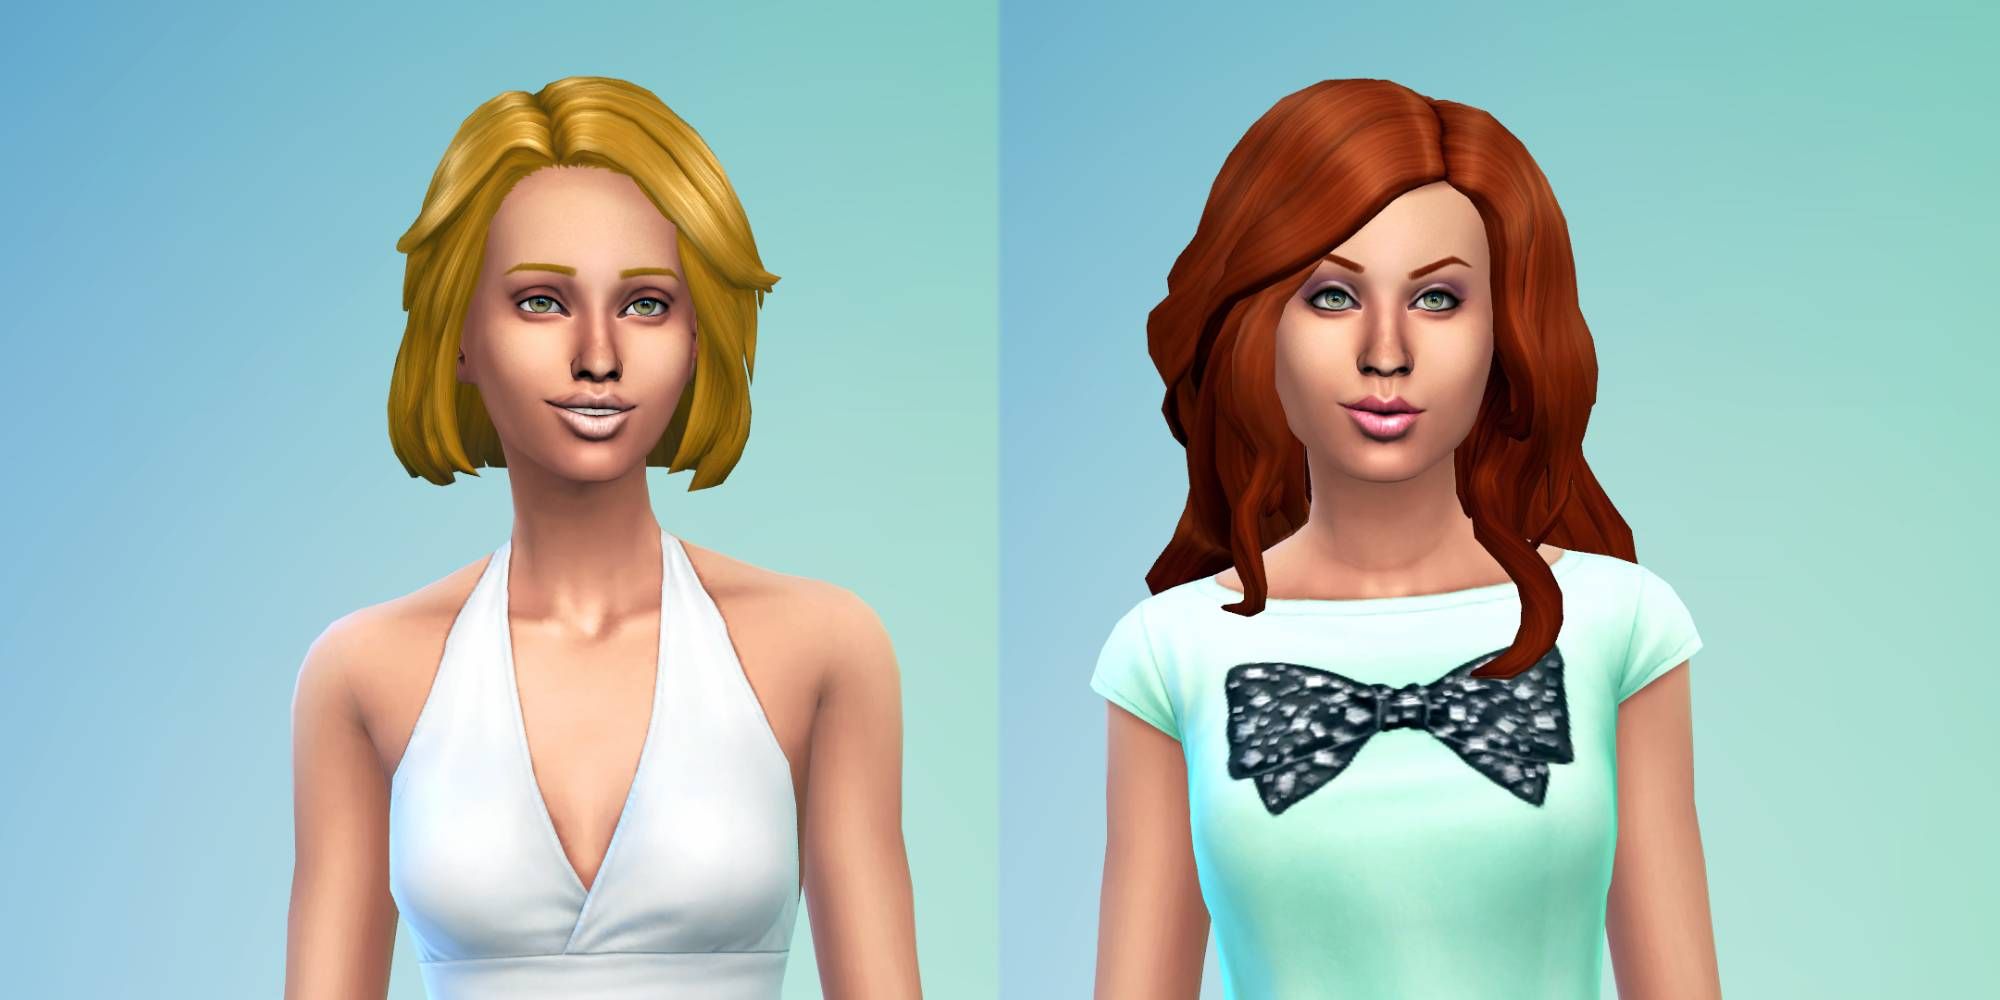 The Sims 4 Dina and Nina Caliente